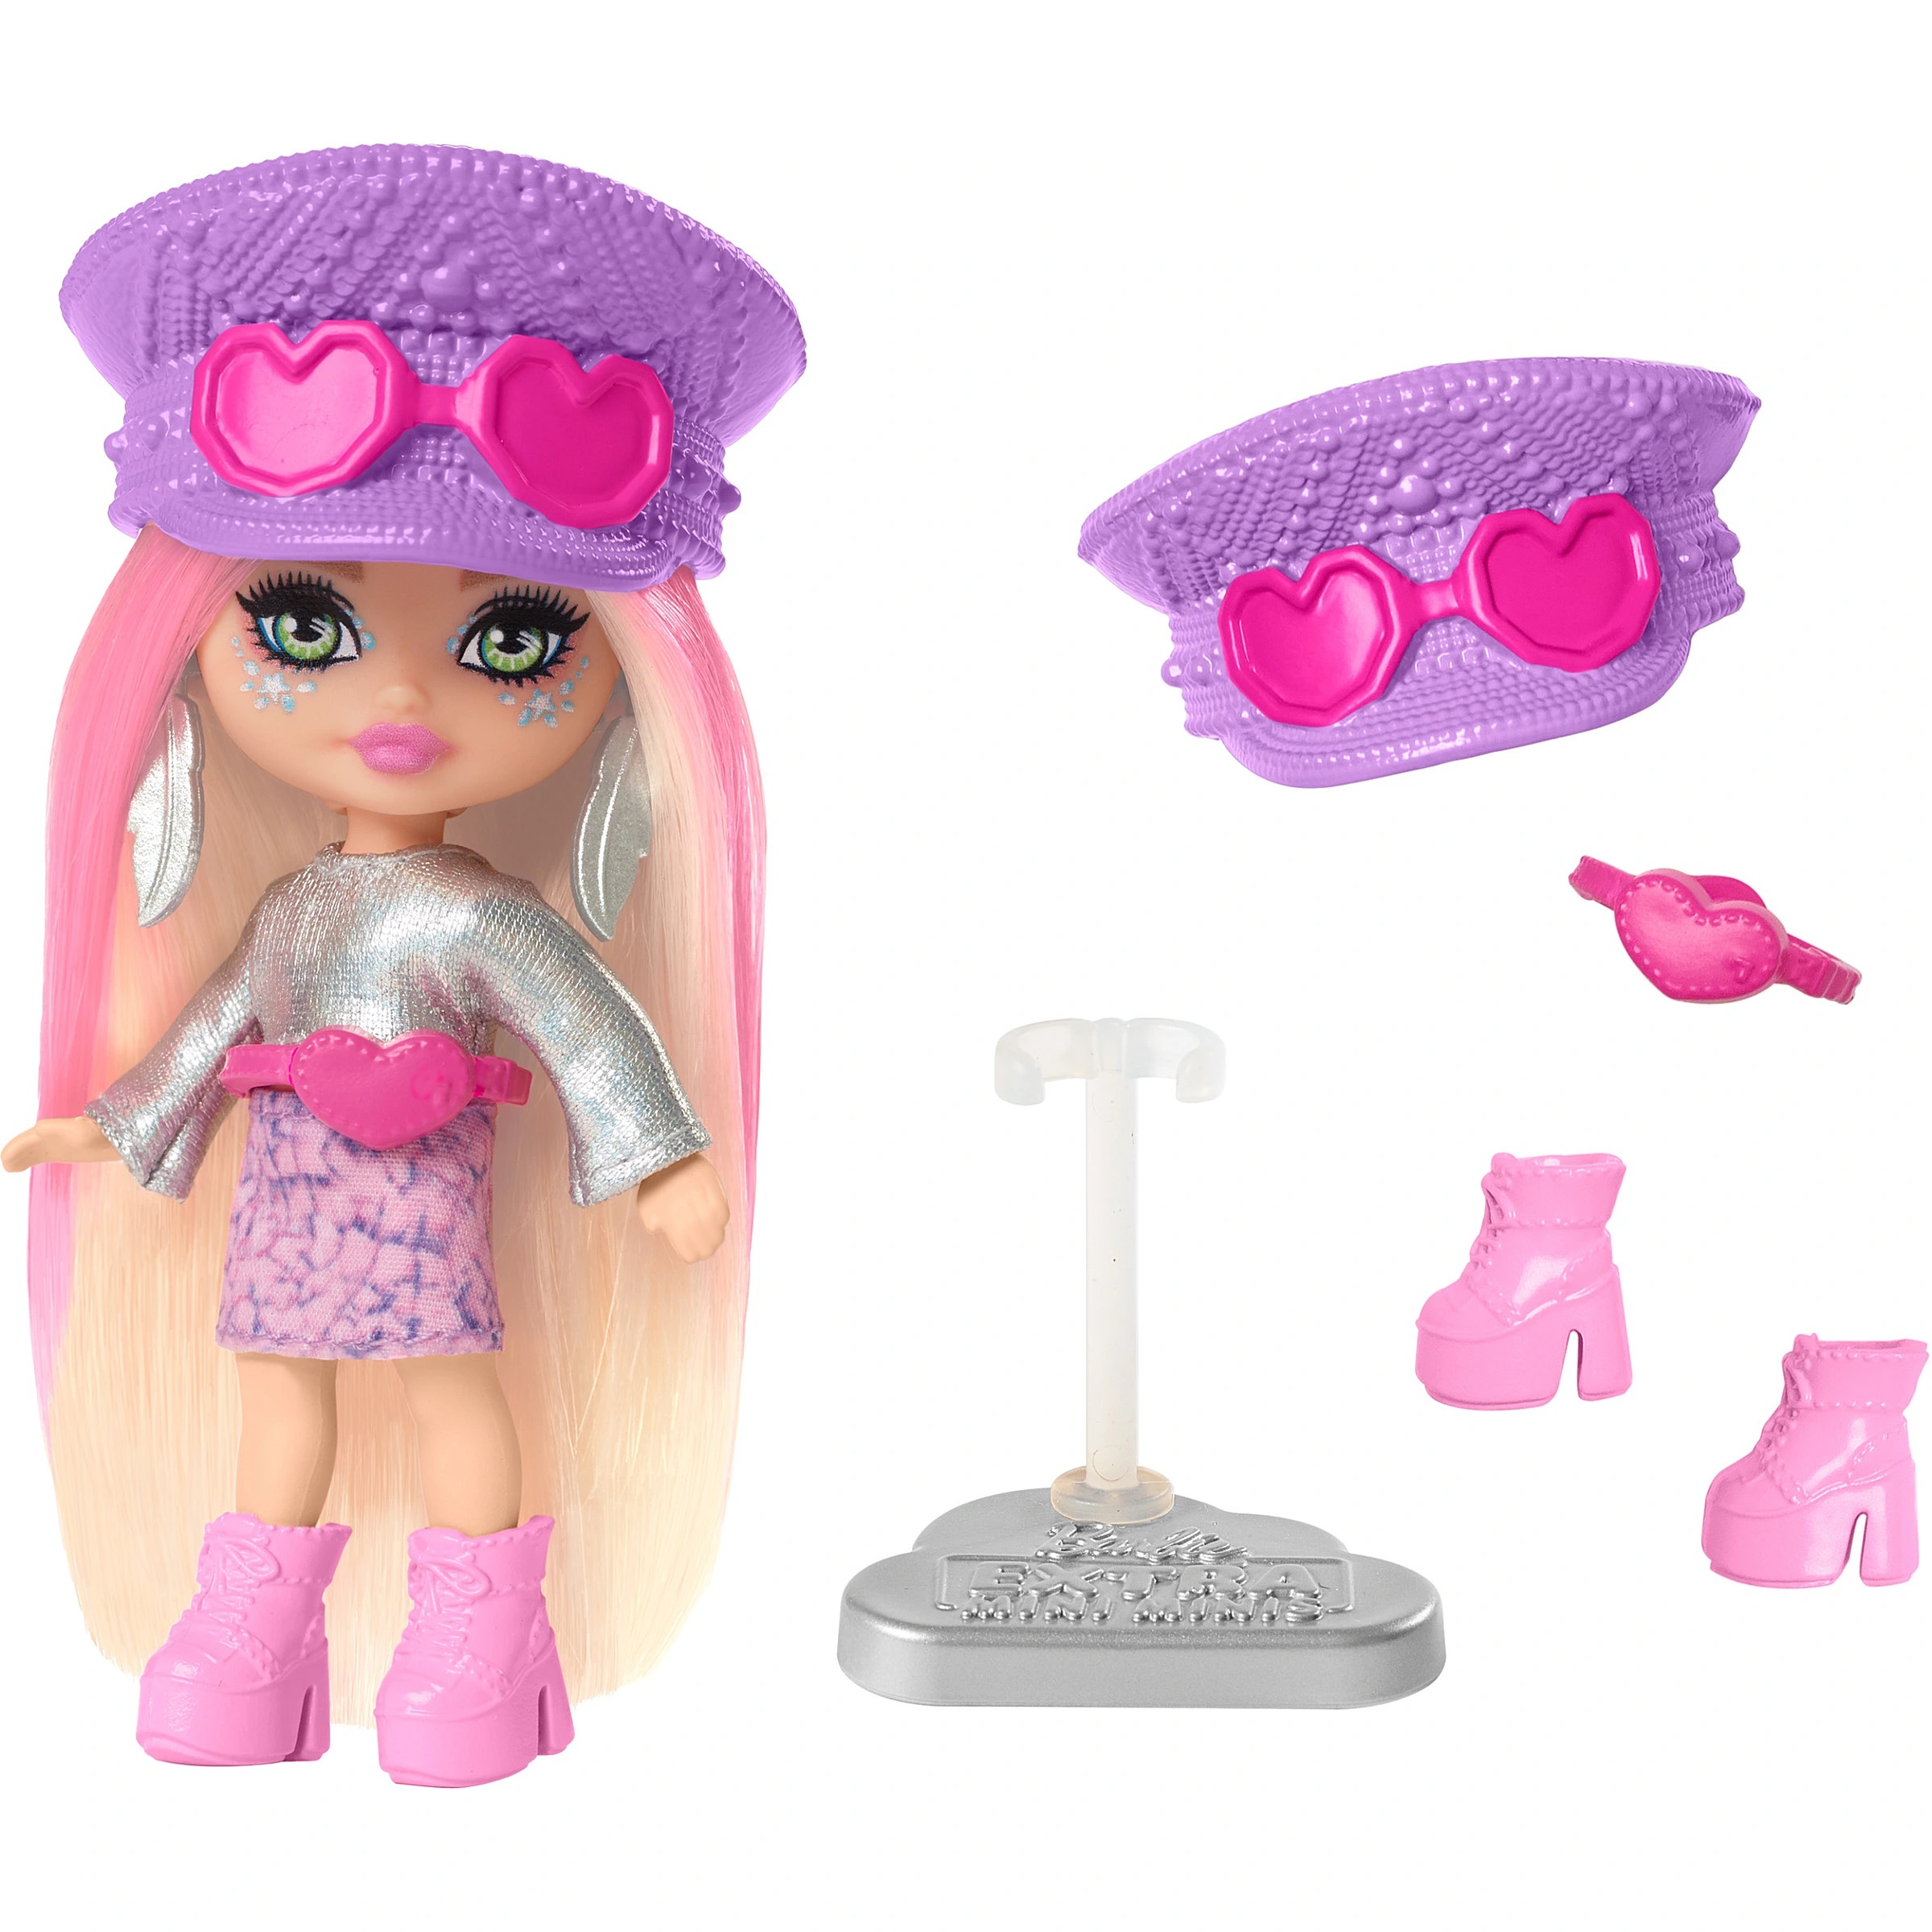 Кукла Barbie HPN07 Extra Fly mini Minis